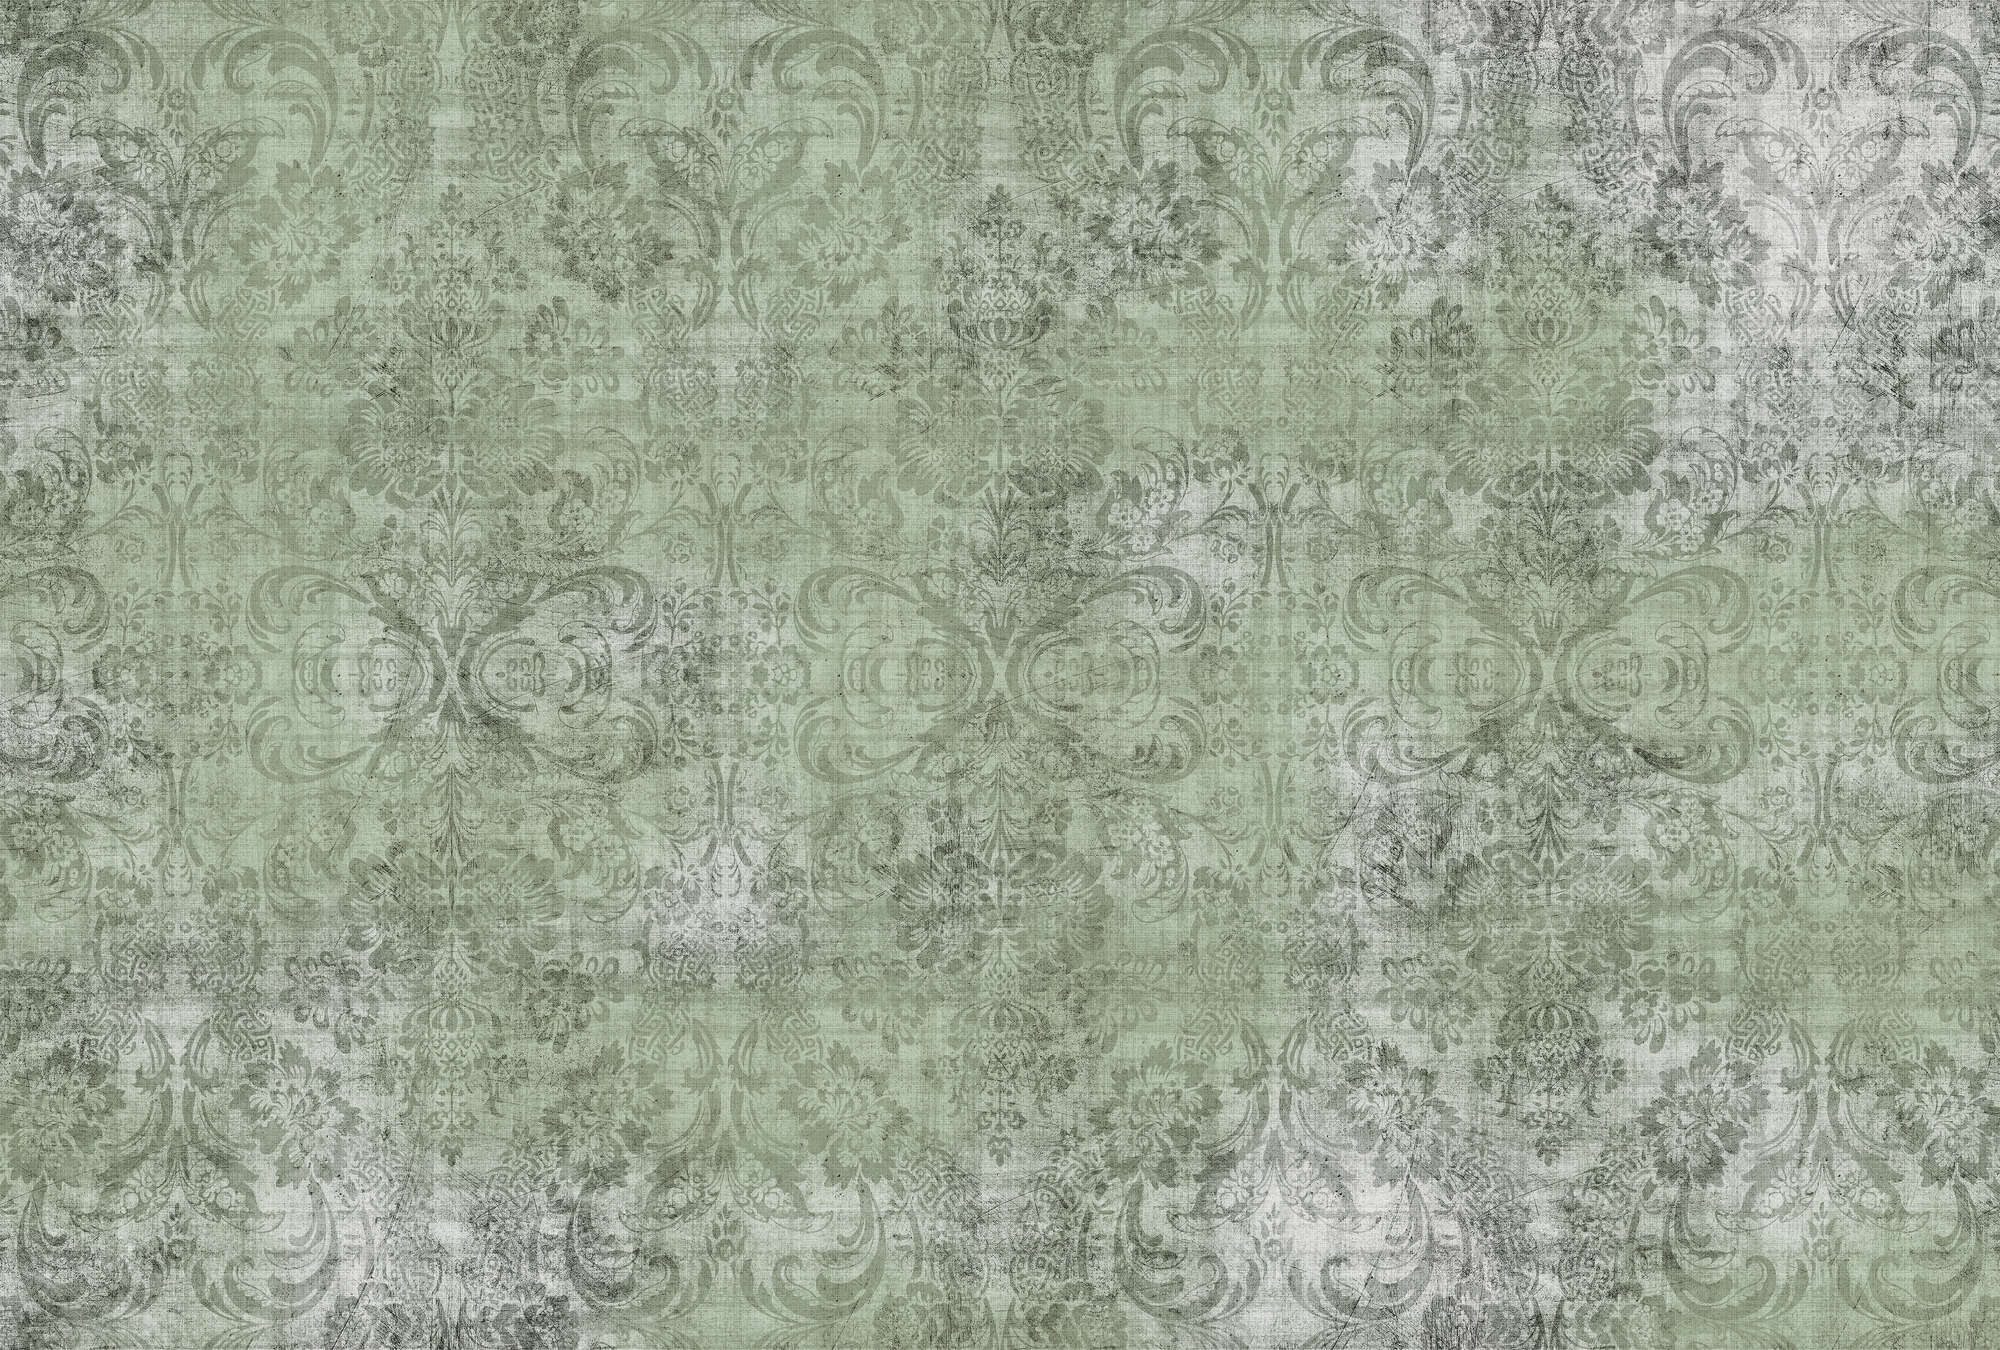             Oud damast 2 - Ornamenten op groen-fotobehang- natuurlijk linnen structuur - groen | structuurvlies
        